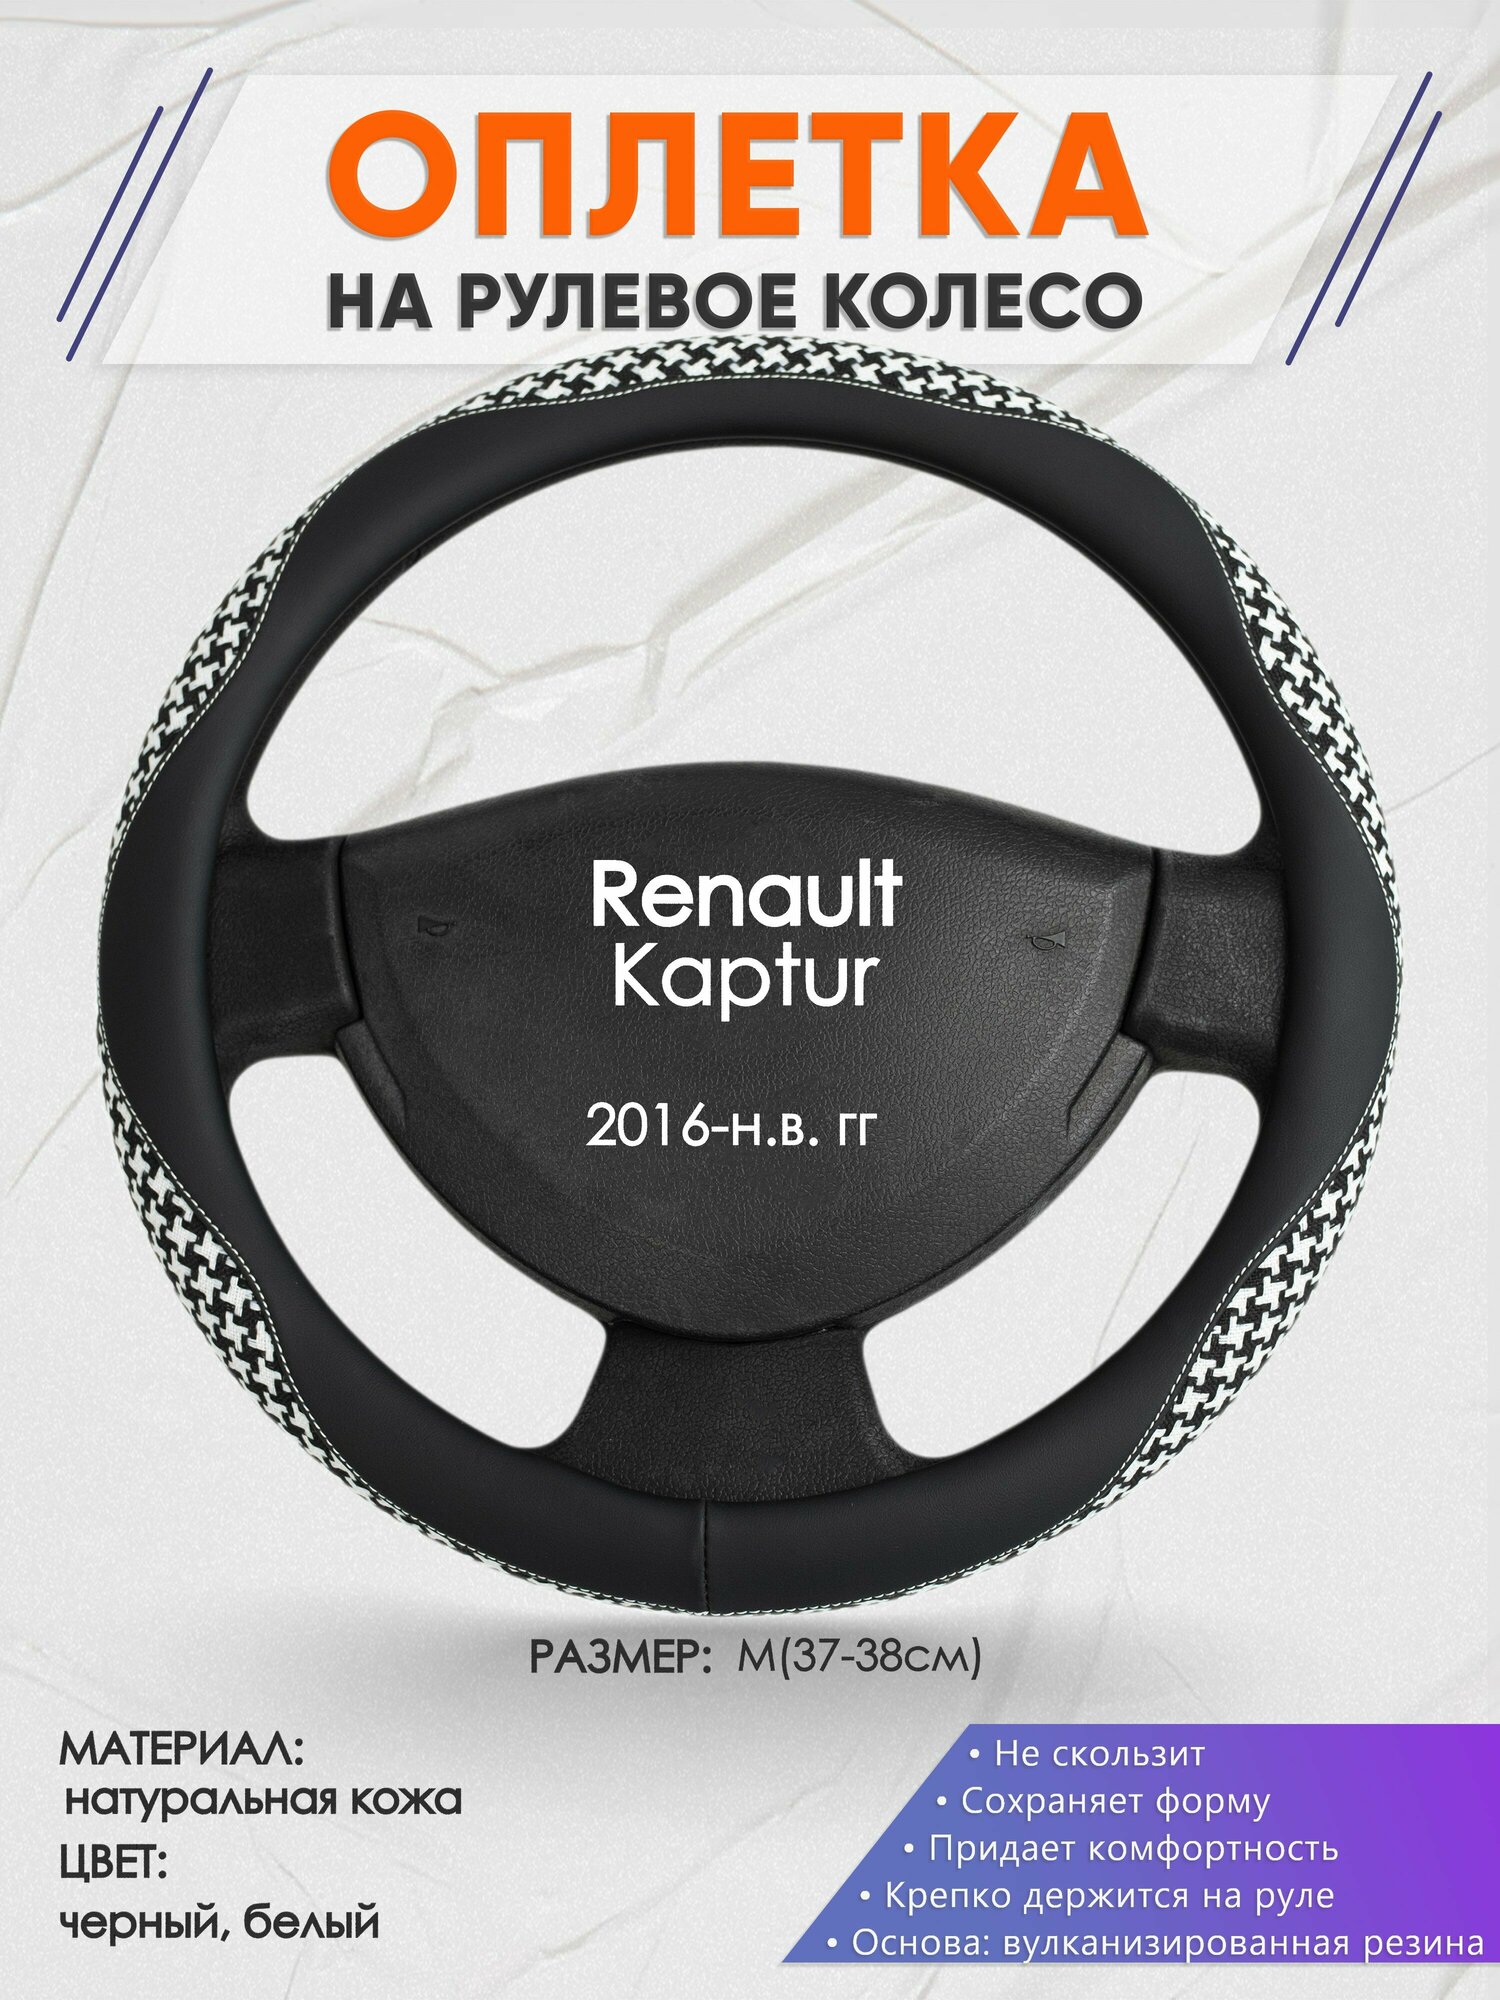 Оплетка на руль для Renault Kaptur (Рено Каптюр) 2016-н. в, M(37-38см), Натуральная кожа 21